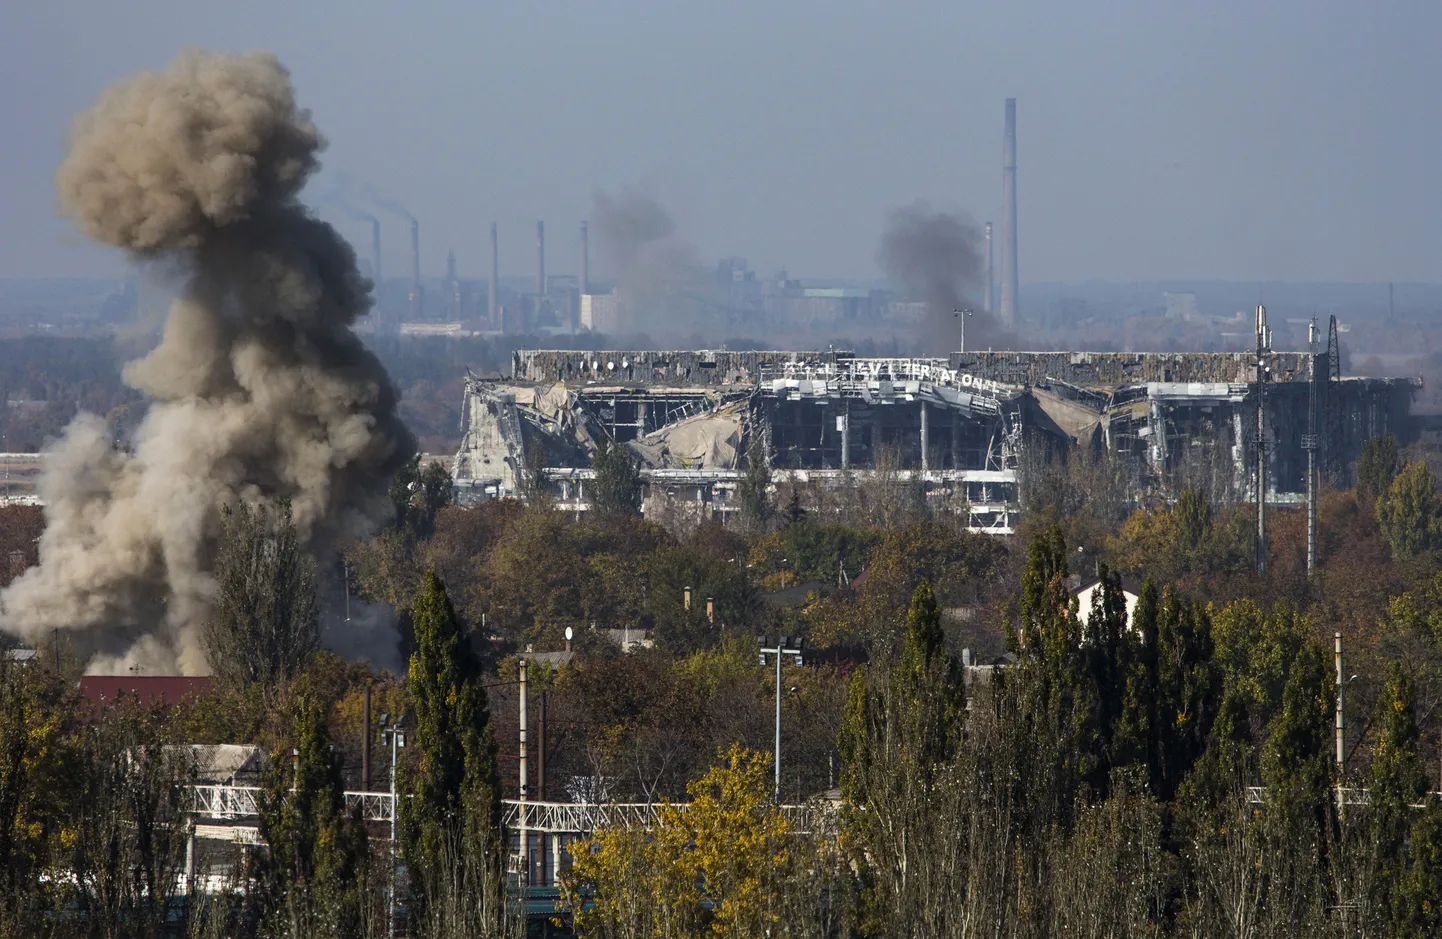 Donetskis asuva Sergei Prokofjevi nimelise rahvusvahelise lennuvälja lähistelt kerkis 12. oktoobril suitsusammas.